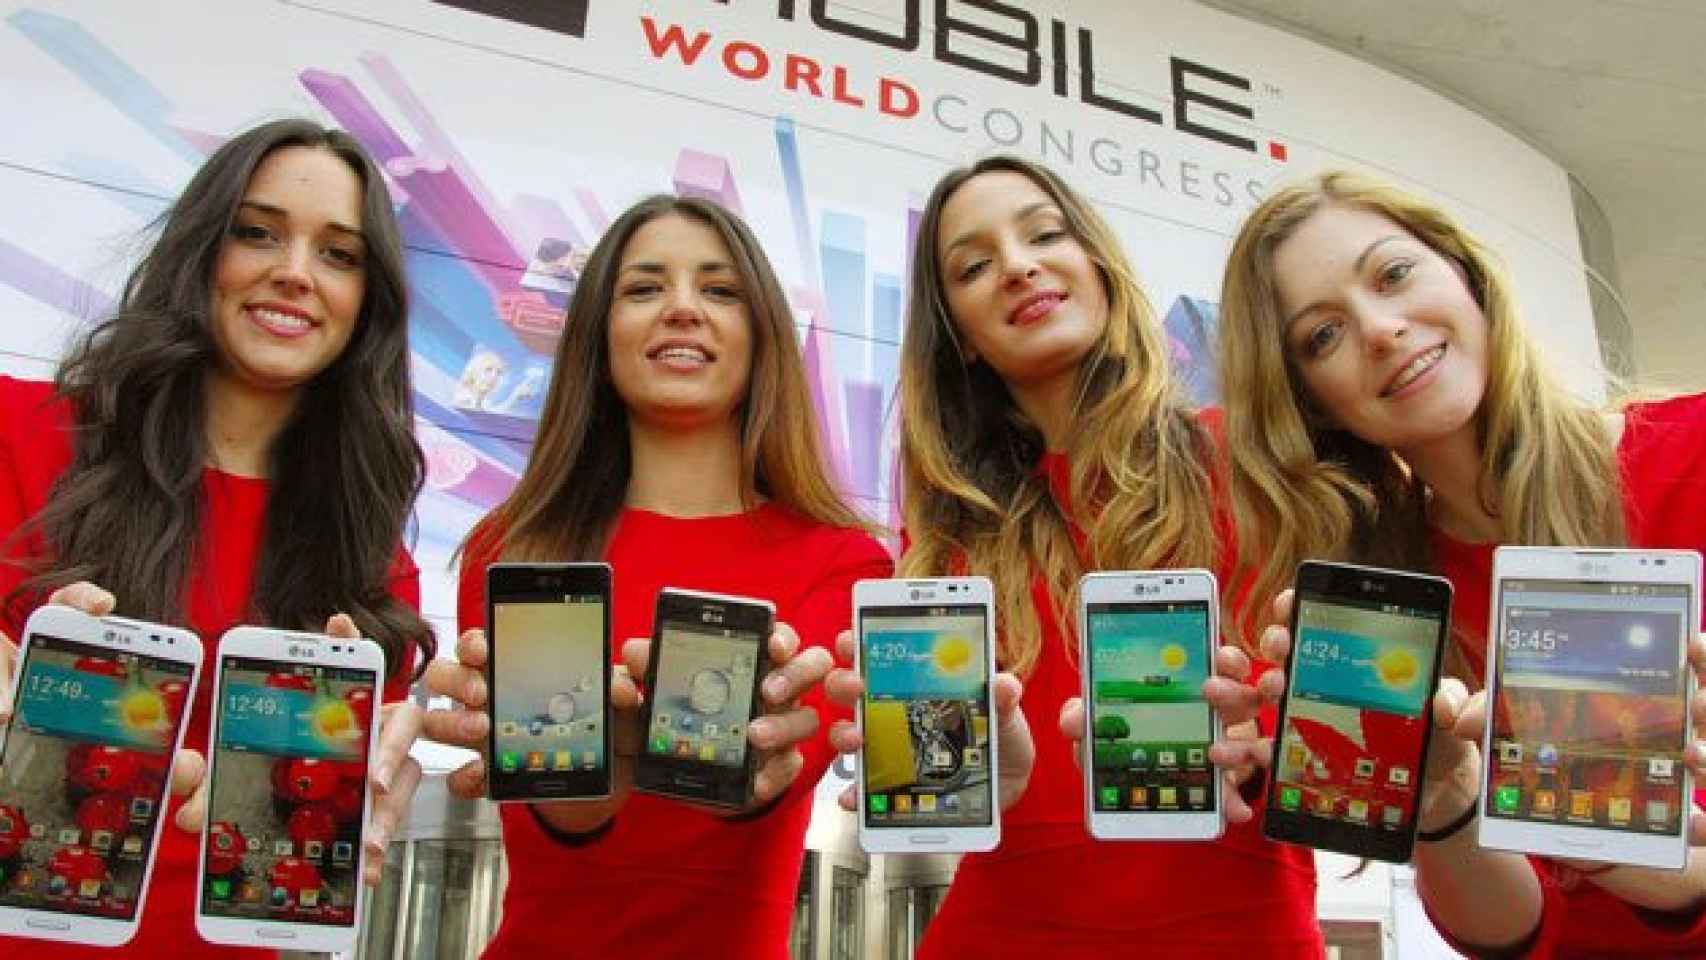 Cuatro azafatas en el Mobile World Congress (MWC) / CG